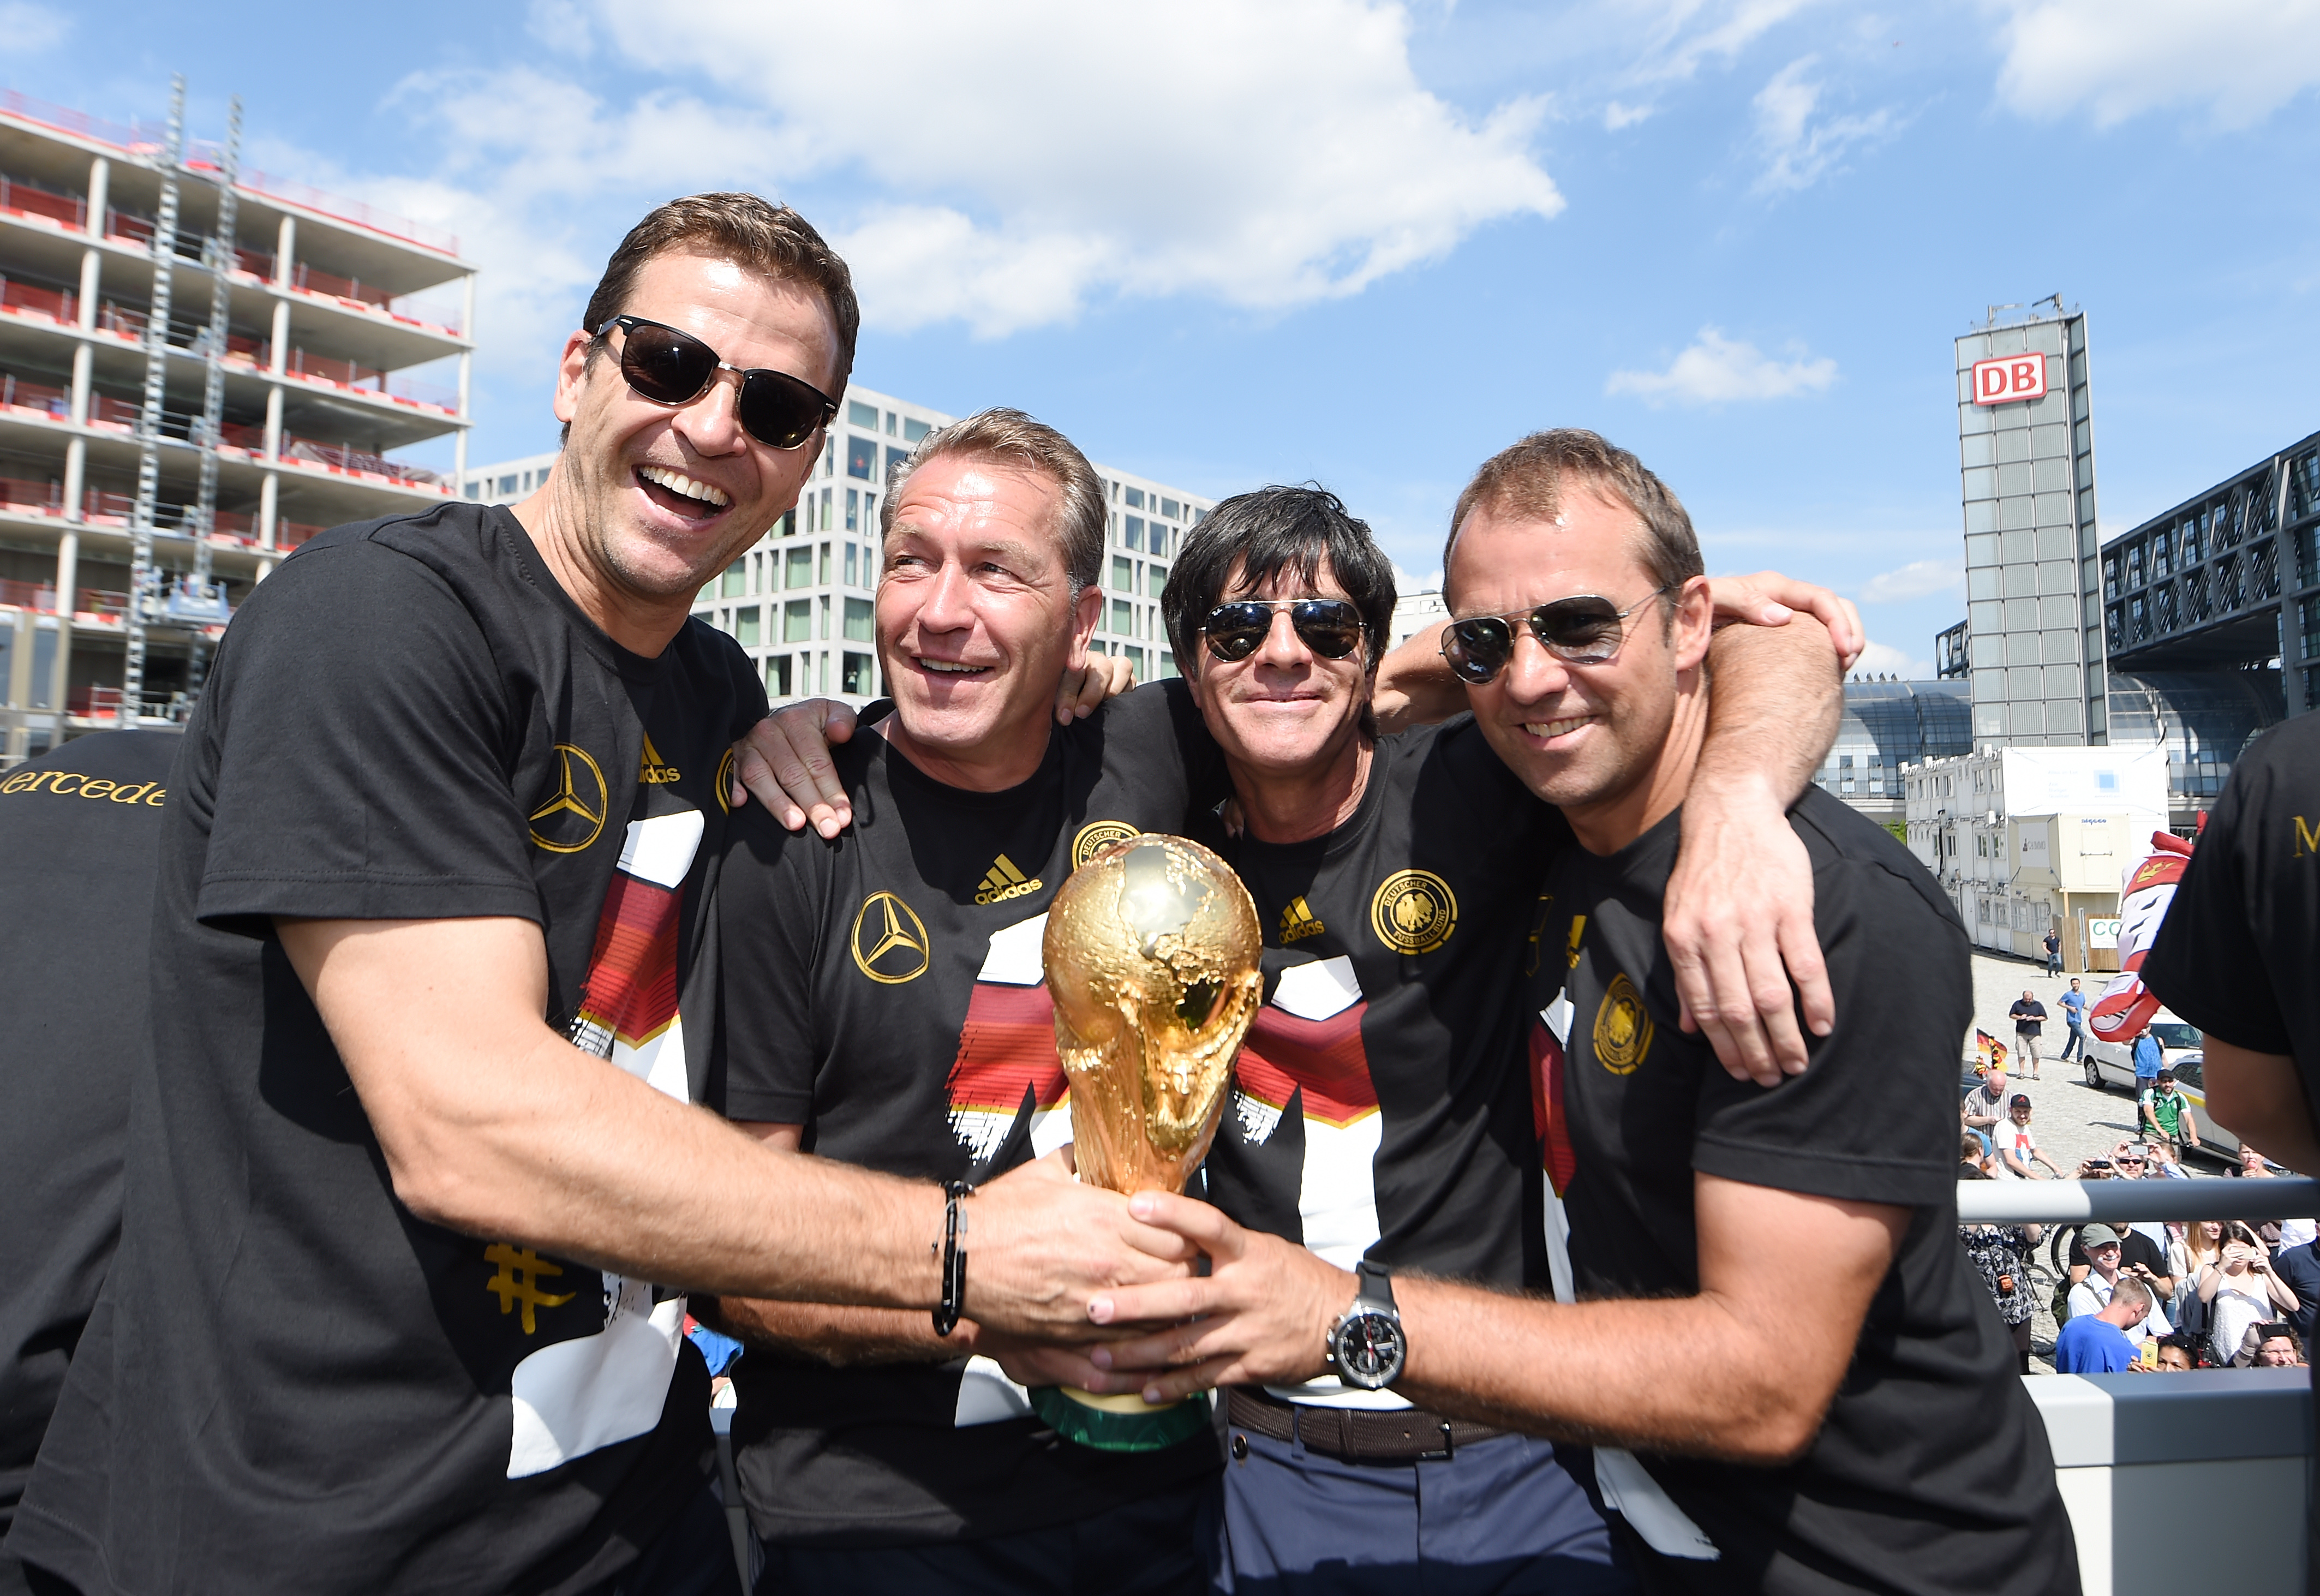 Germany Victory Celebration - 2014 FIFA World Cup Brazil